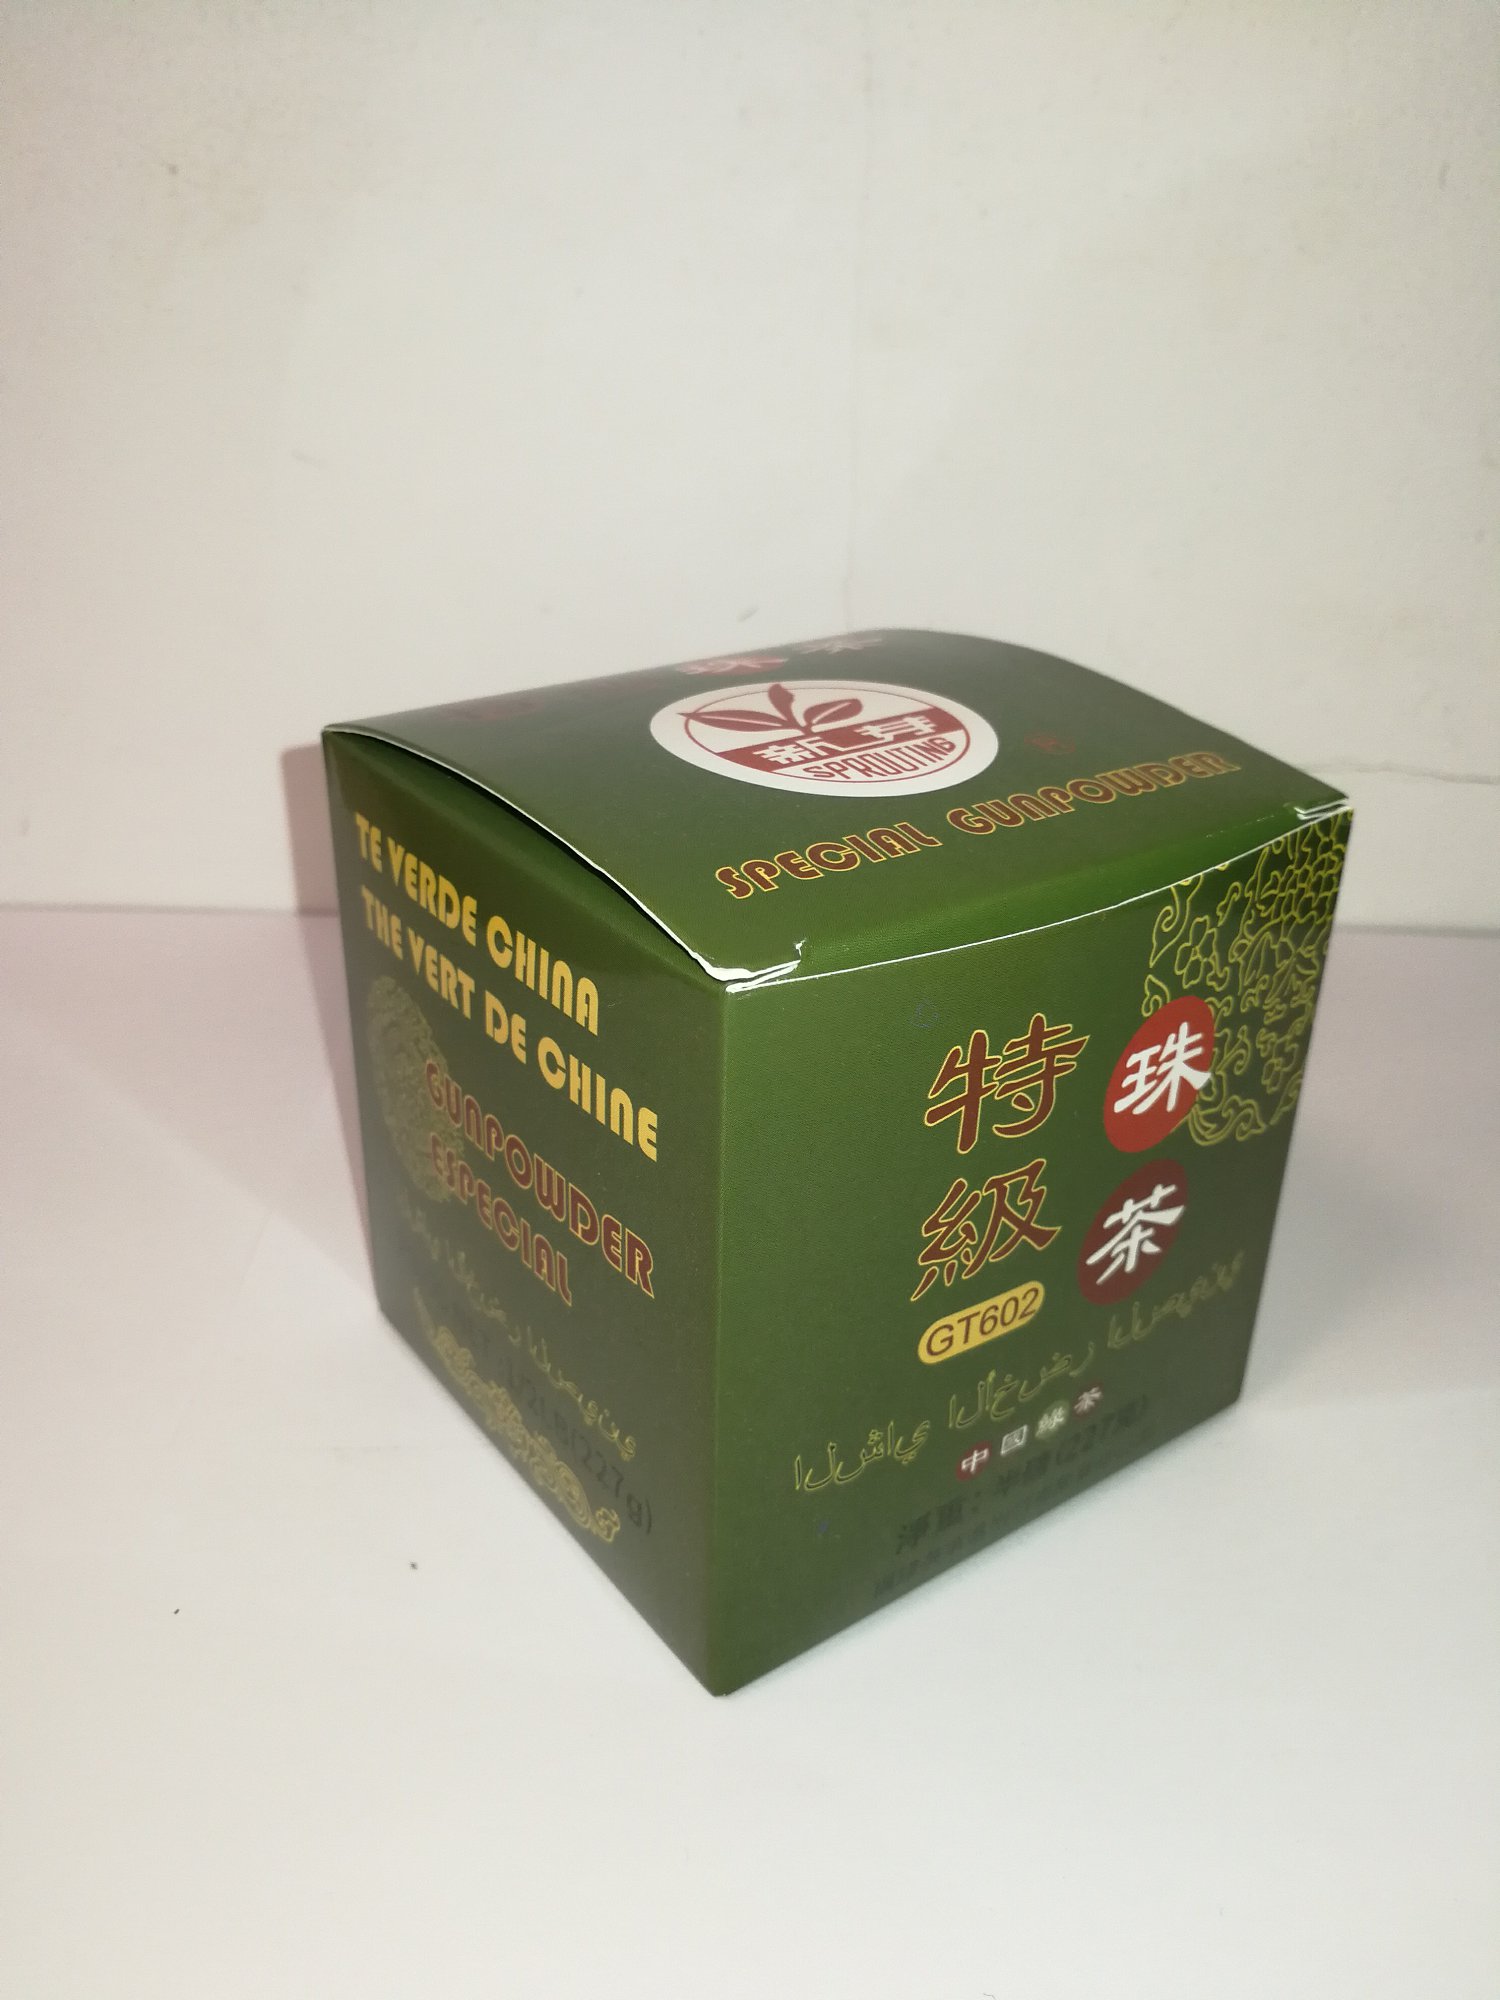 Green Tea Special Gunpowder #GT602 1/2LB